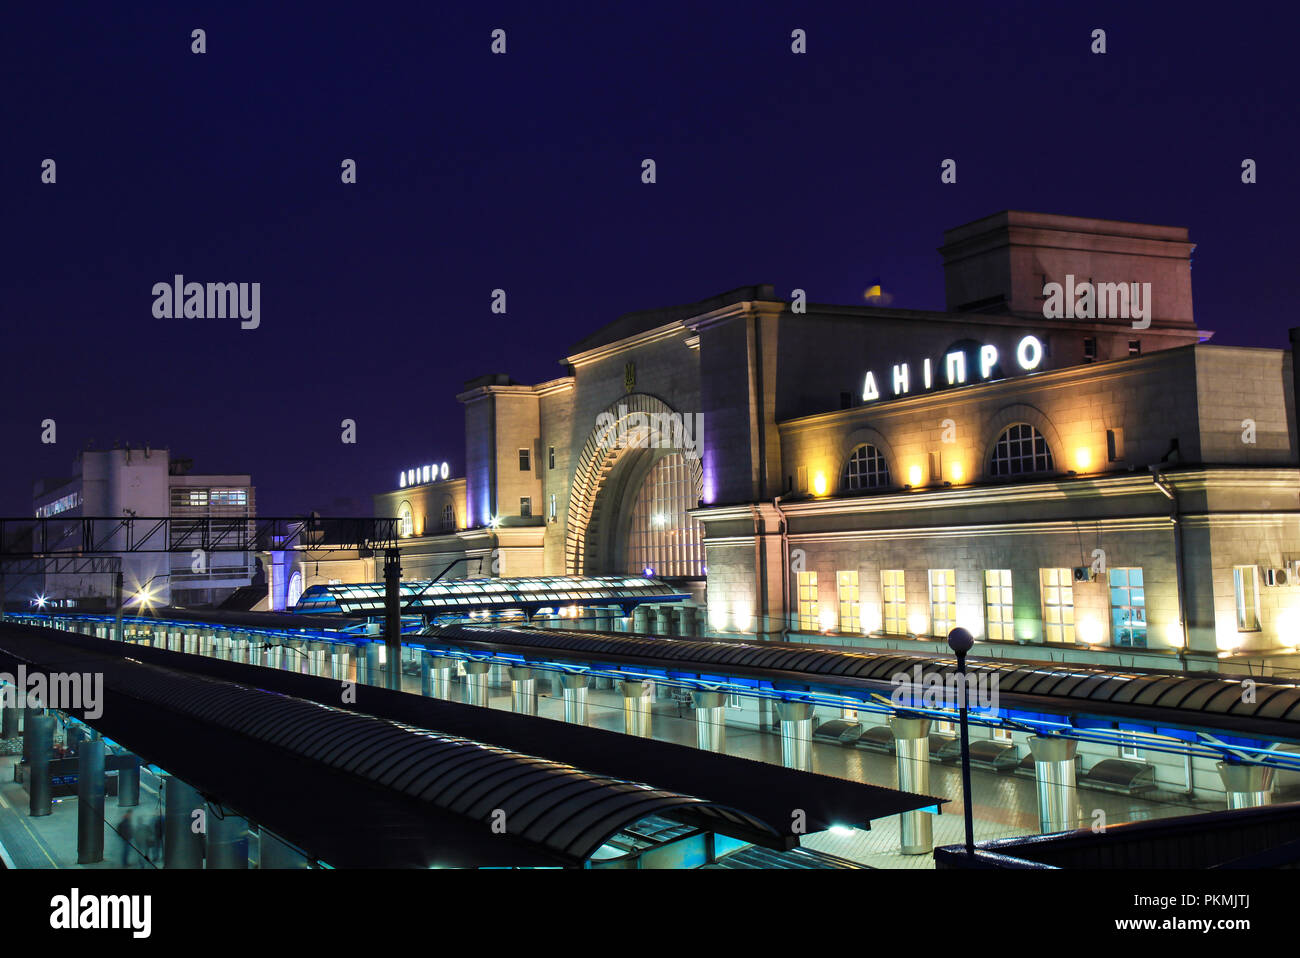 La plate-forme et la construction de la gare avec l'inscription "nipro' dans la ville de Dnipropetrovsk dans la nuit. Dnepr, Wien, Autriche Banque D'Images